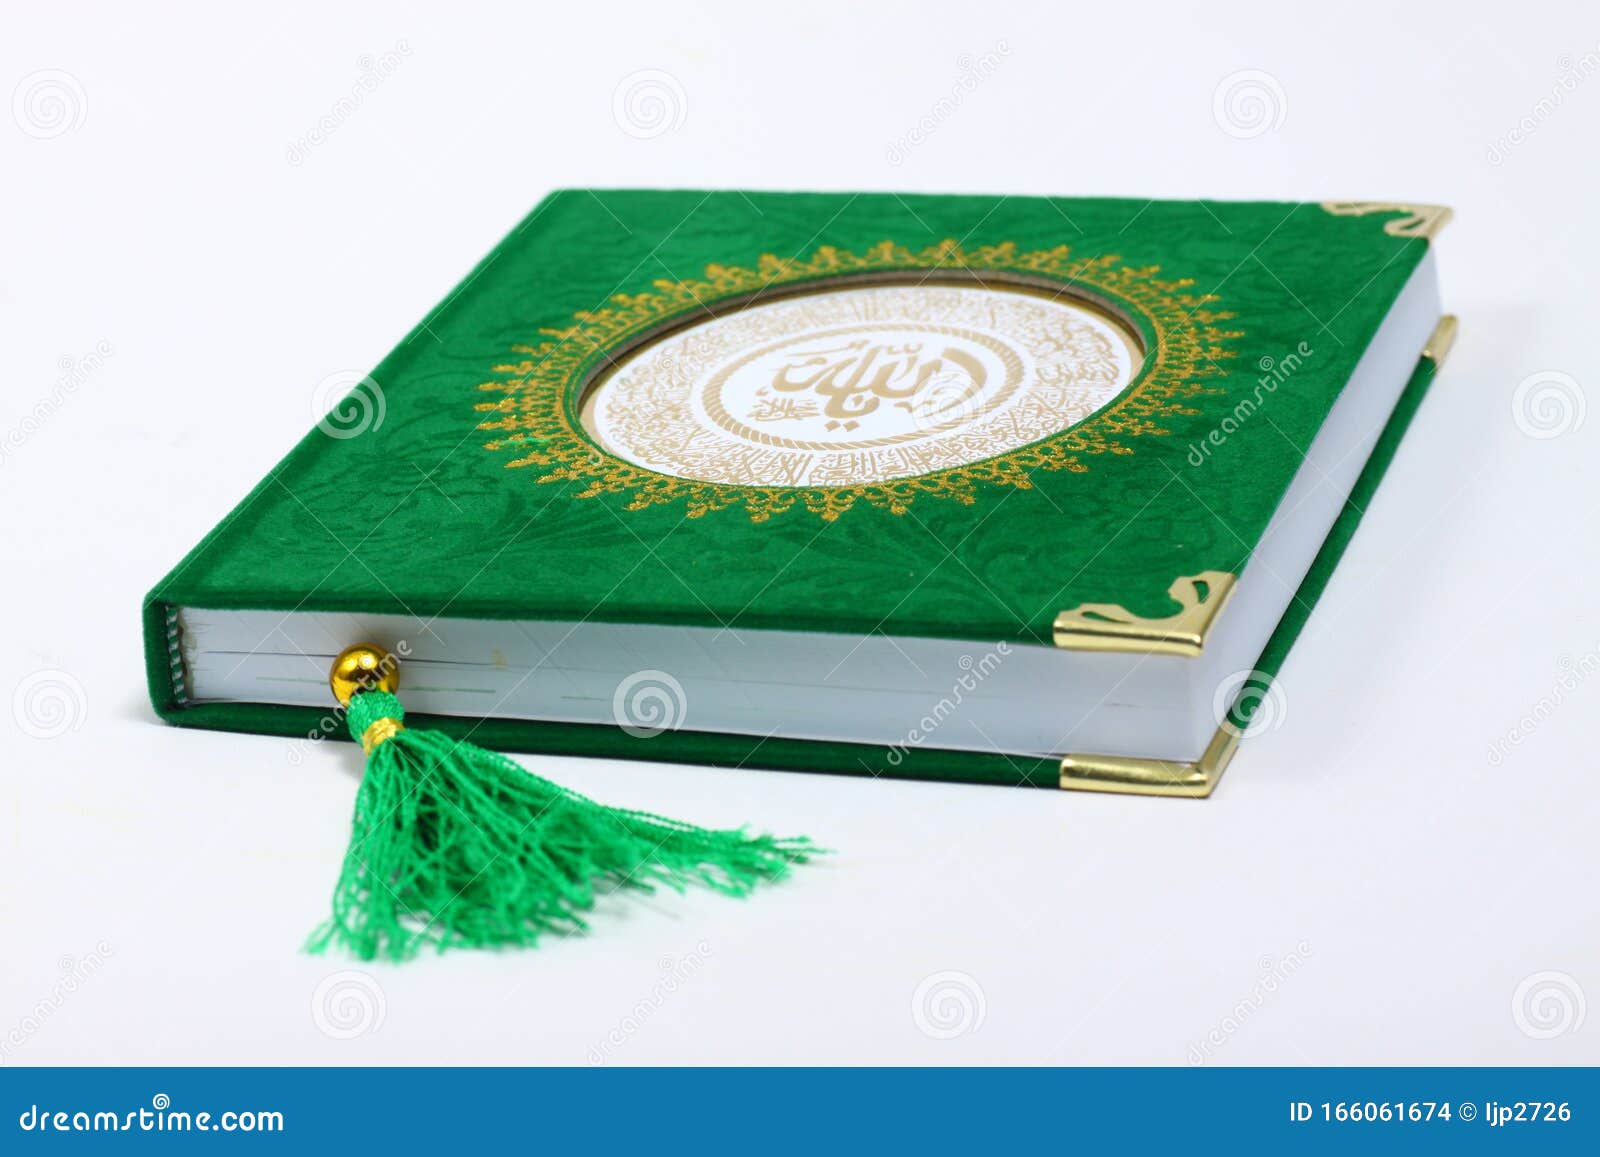 Hãy đến với hình ảnh nền xanh tươi của Kinh Qur\'an, chắc chắn sẽ khiến bạn cảm thấy bình yên và thư thái.